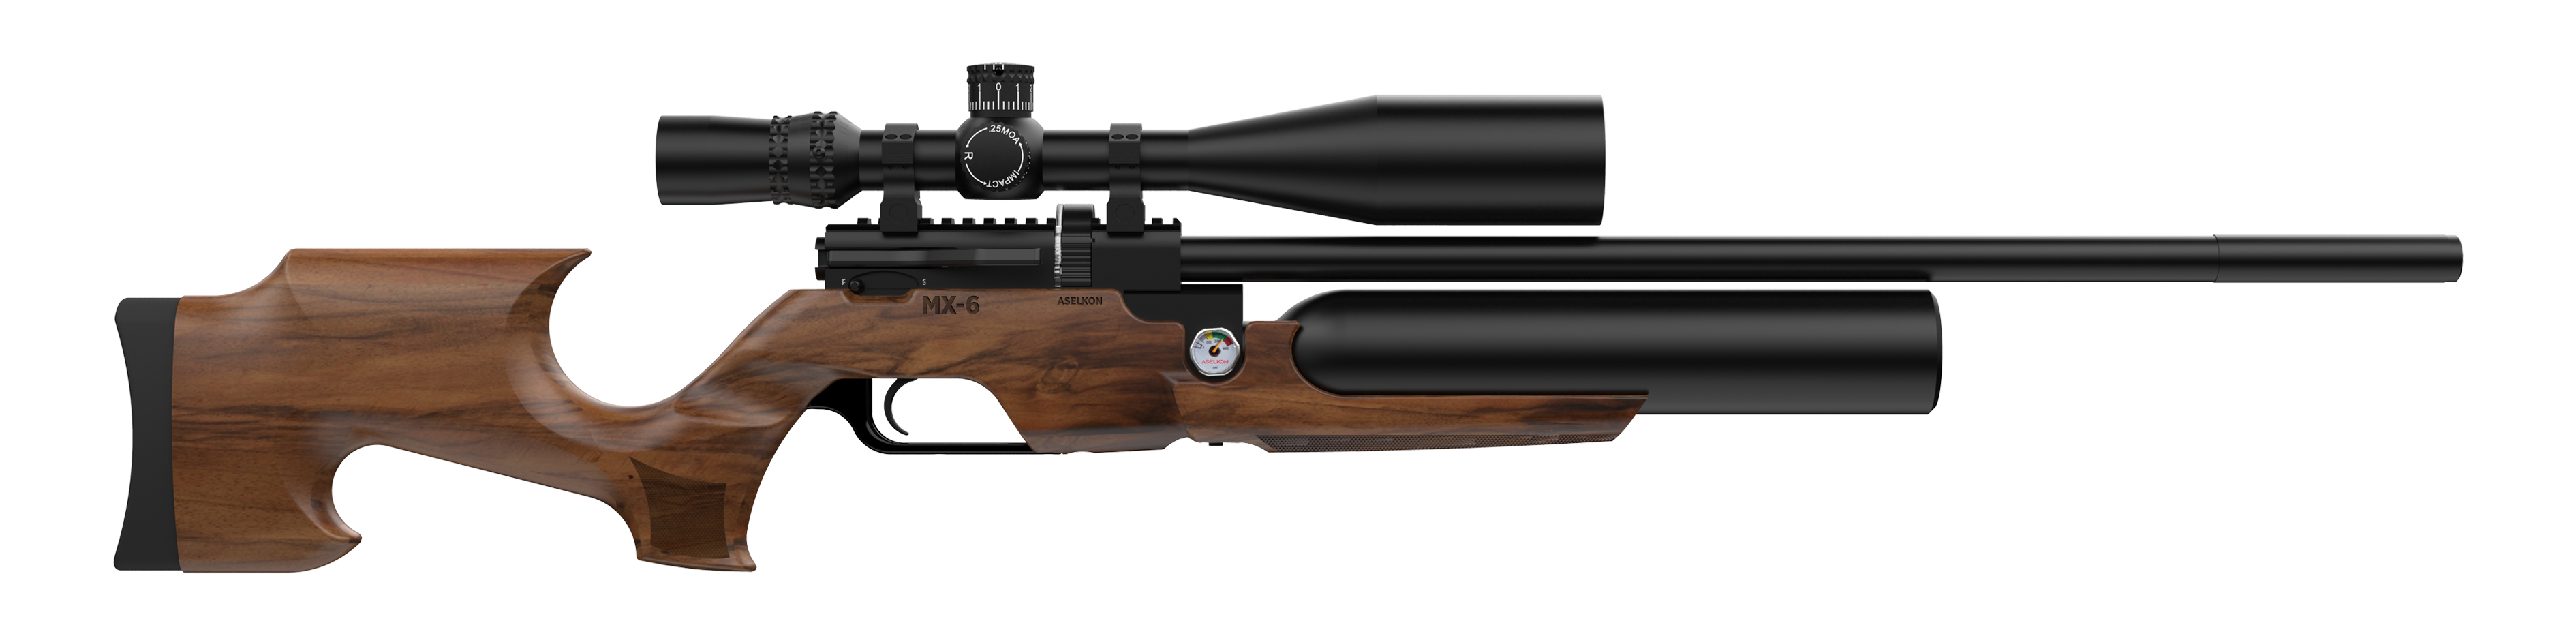 Aselkon MX6 pcp air rifle